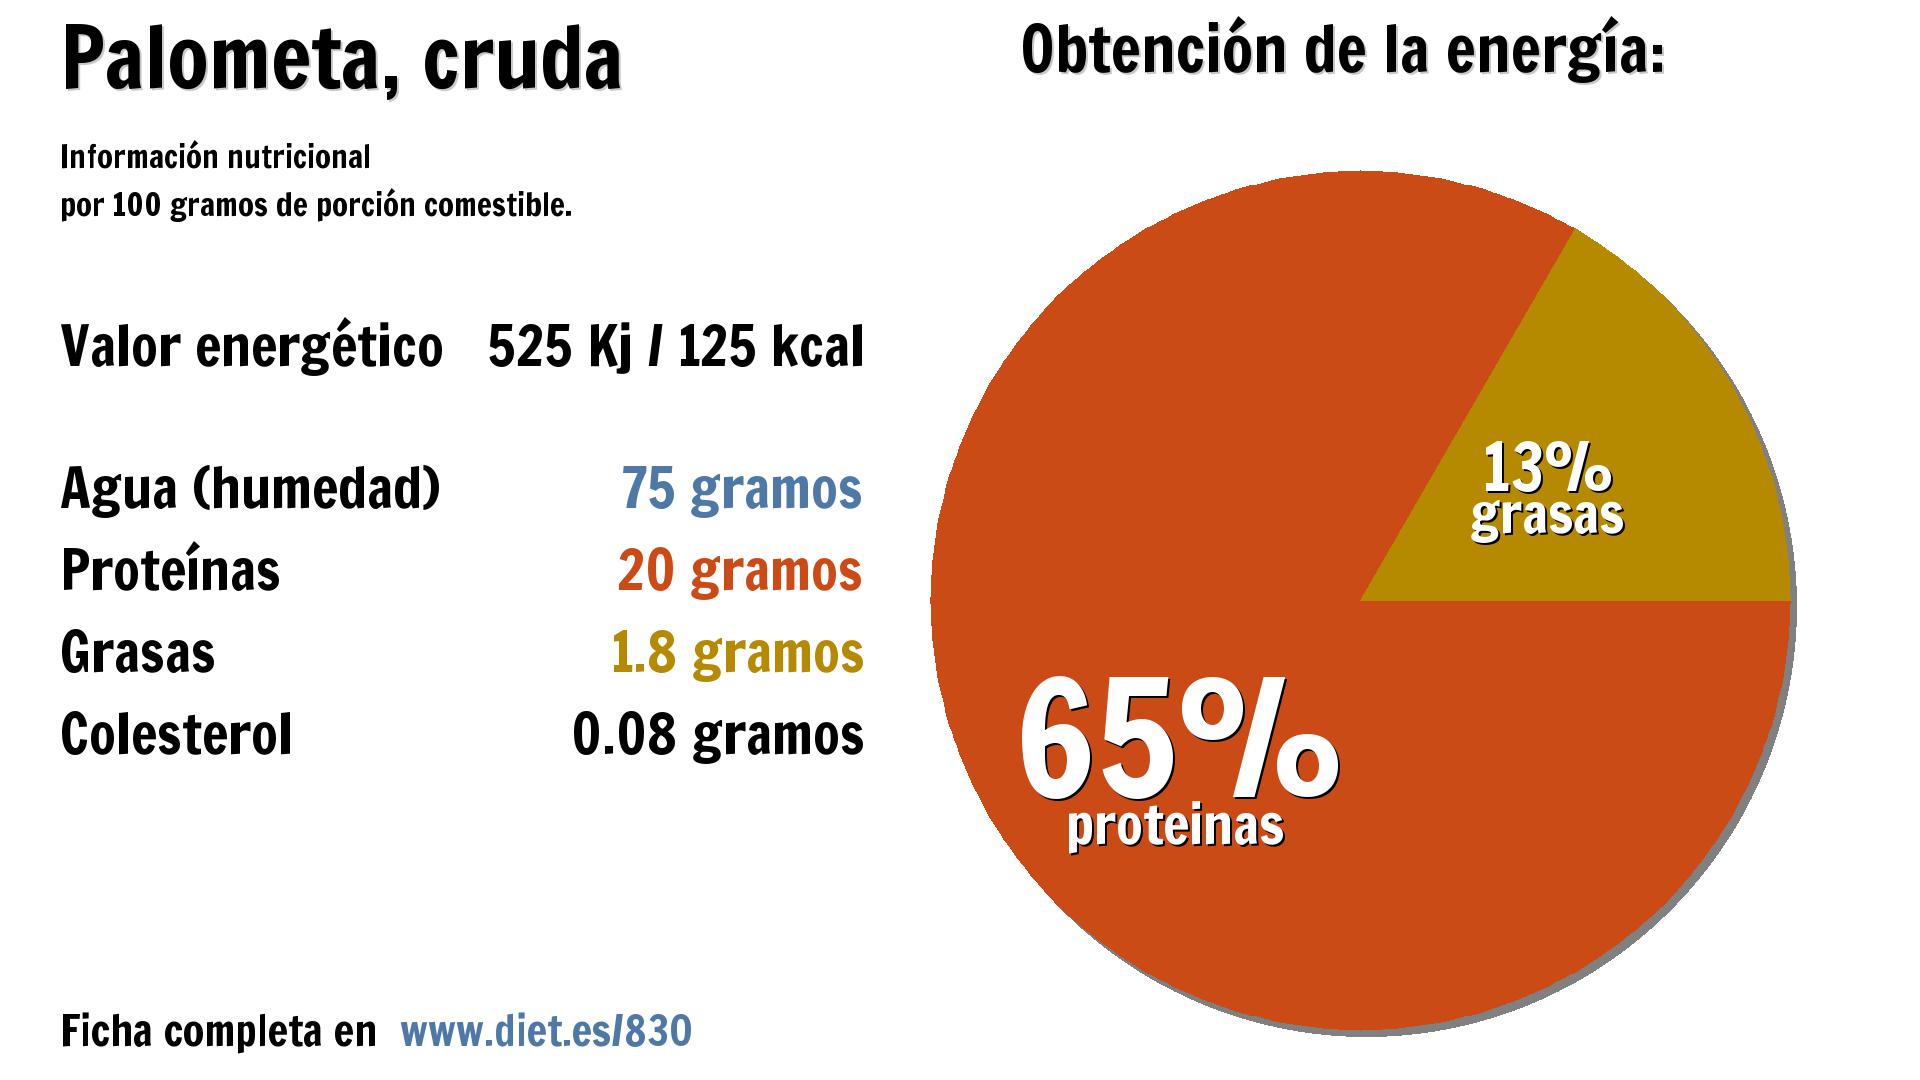 Palometa, cruda: energía 525 Kj, agua 75 g., proteínas 20 g. y grasas 2 g.